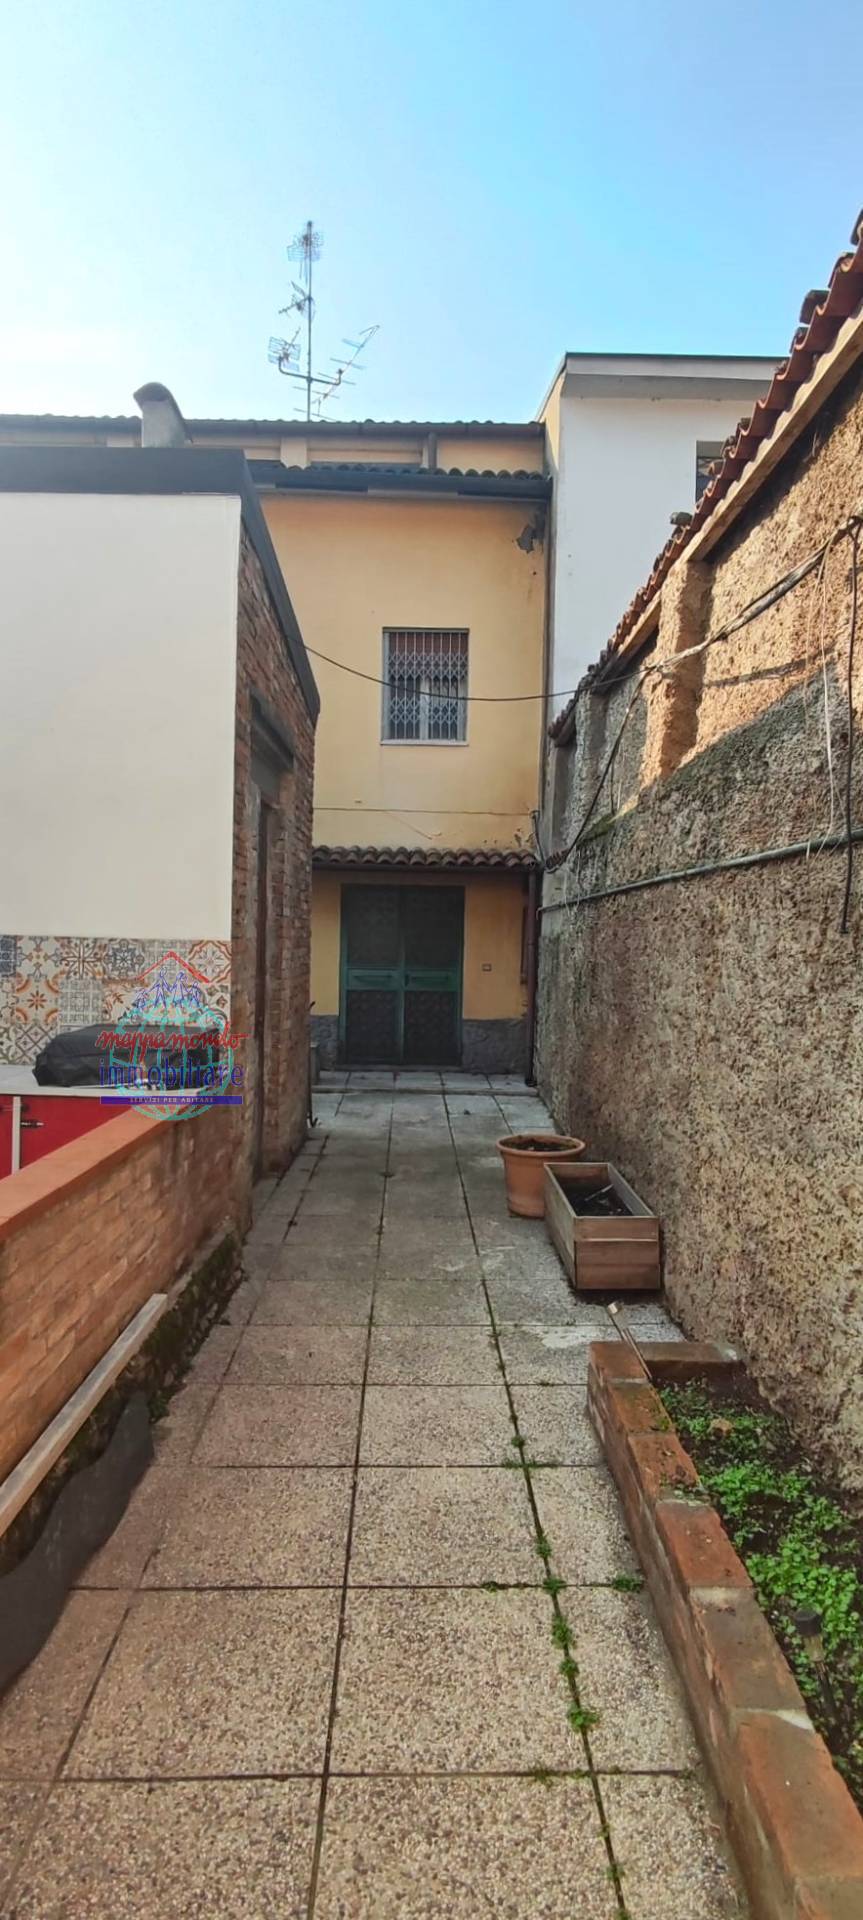 Villa Bifamiliare in vendita a Cento, 8 locali, zona Località: Cento, prezzo € 125.000 | PortaleAgenzieImmobiliari.it